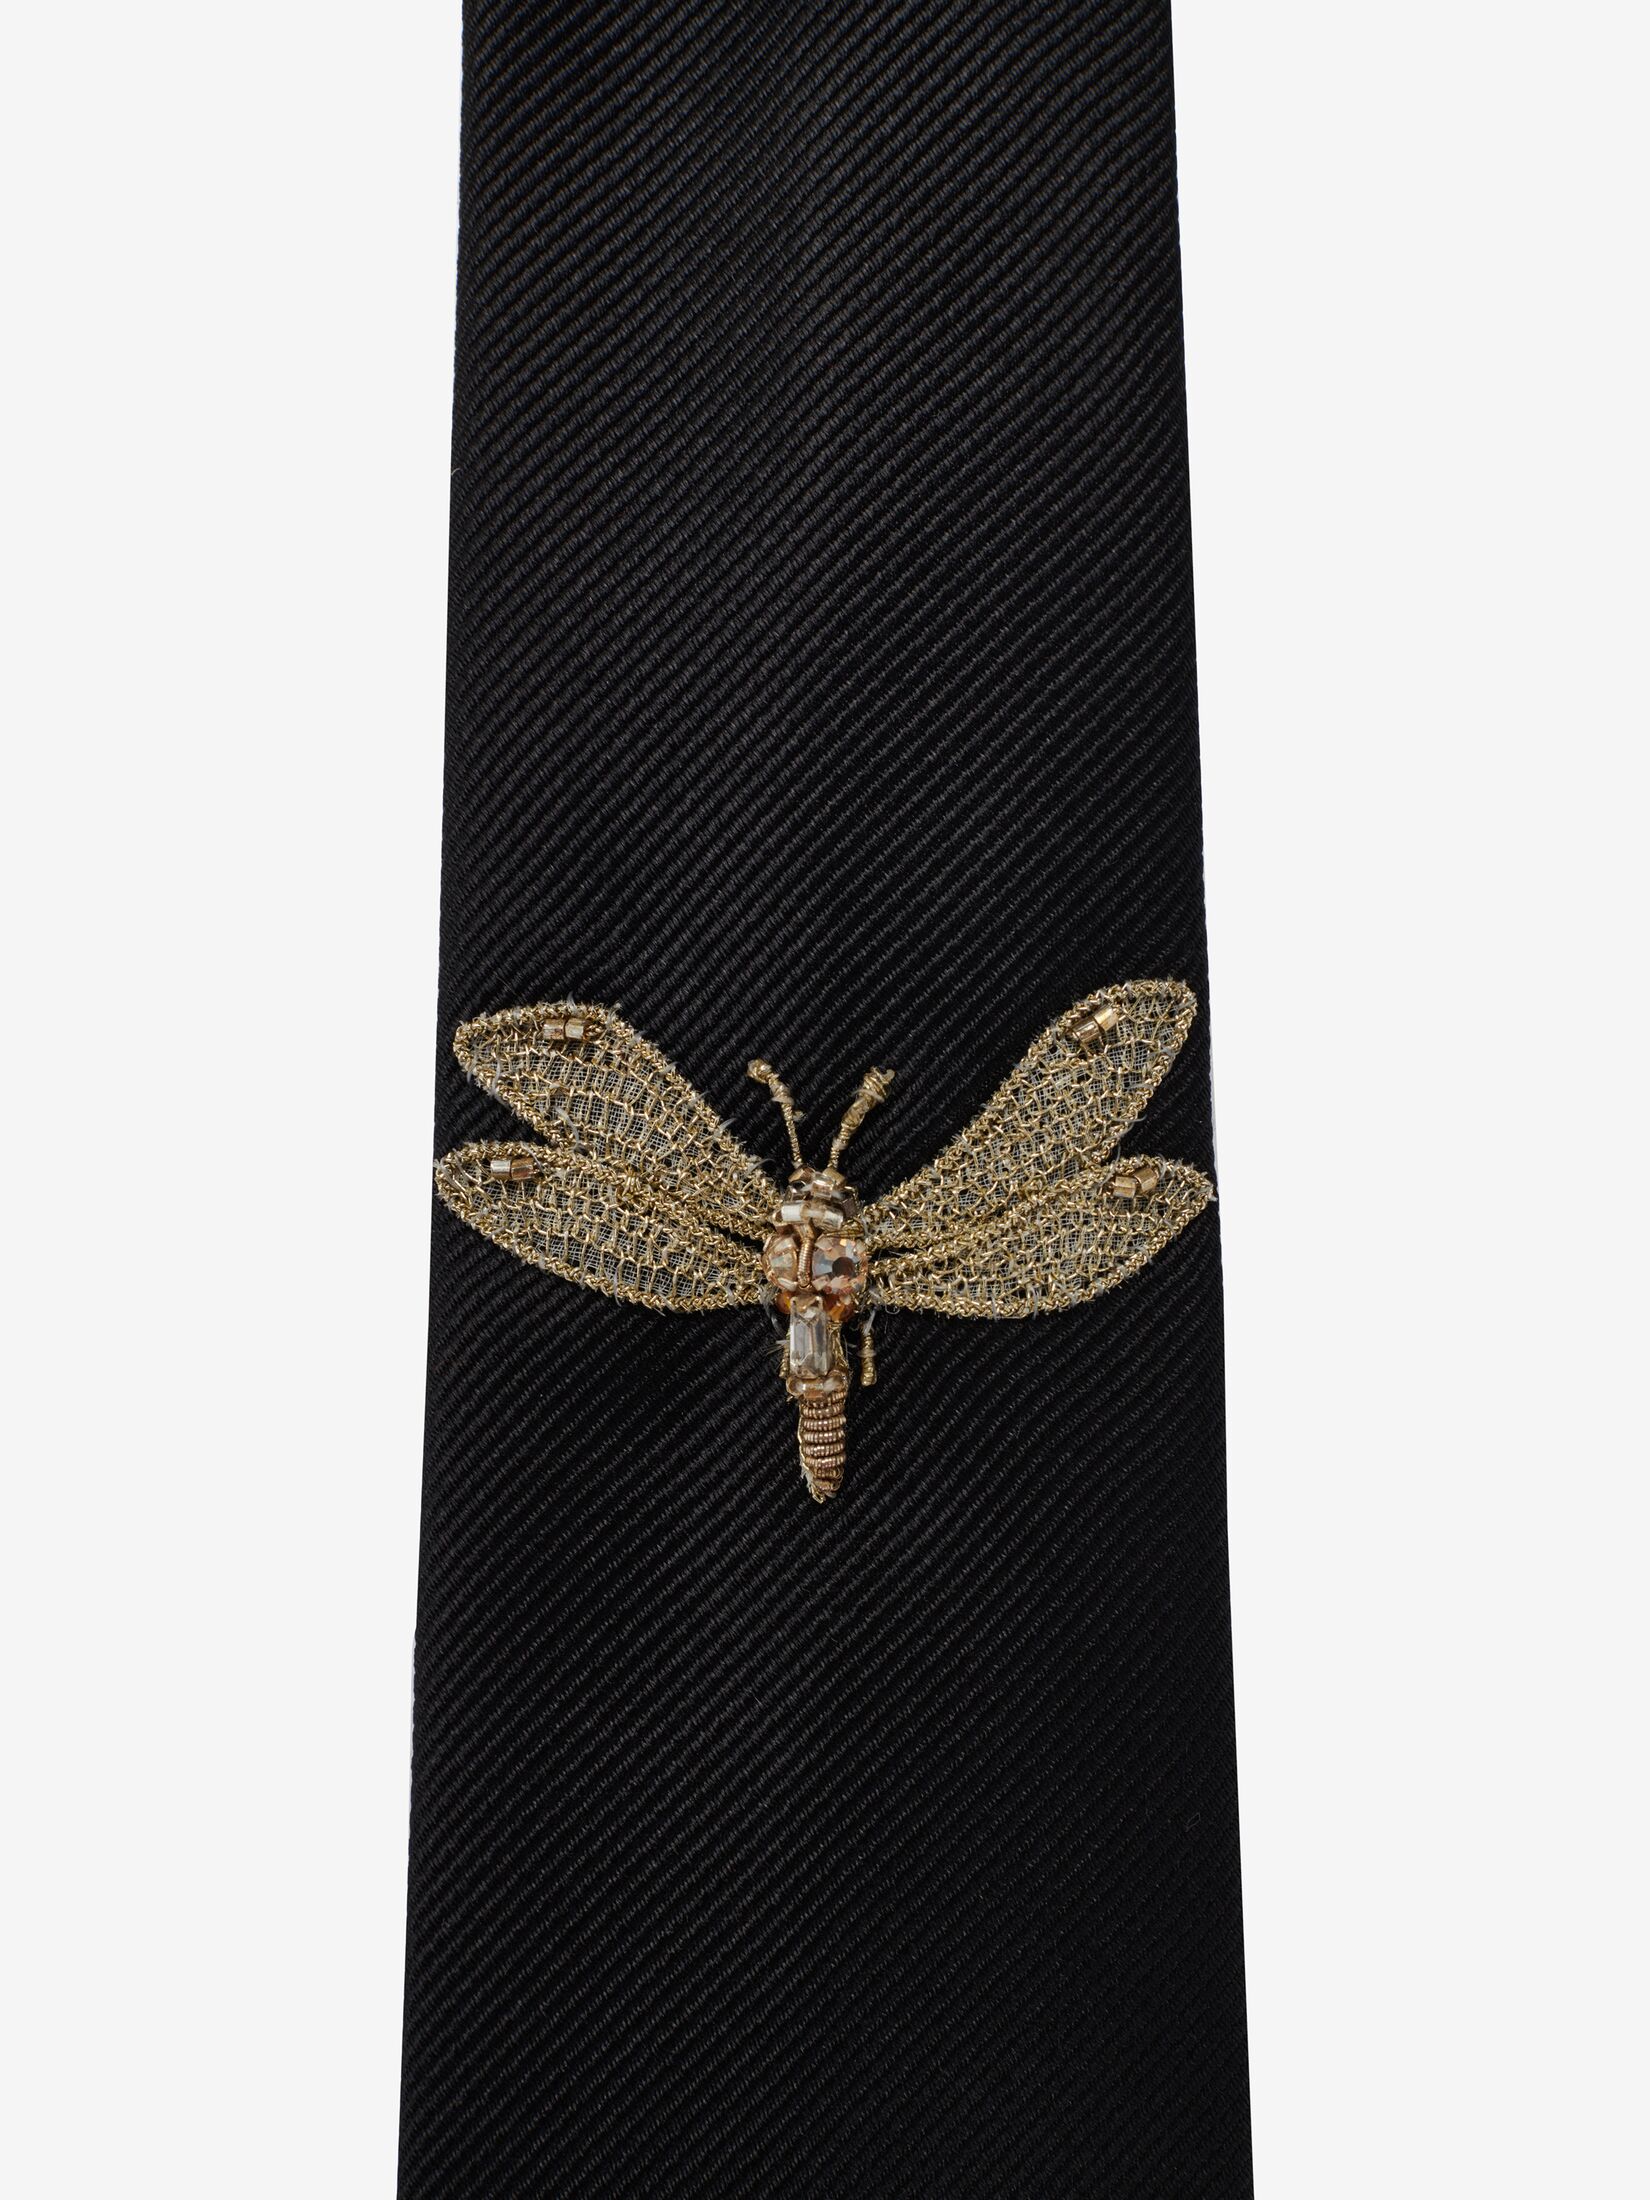 Dragonfly Applique Tie